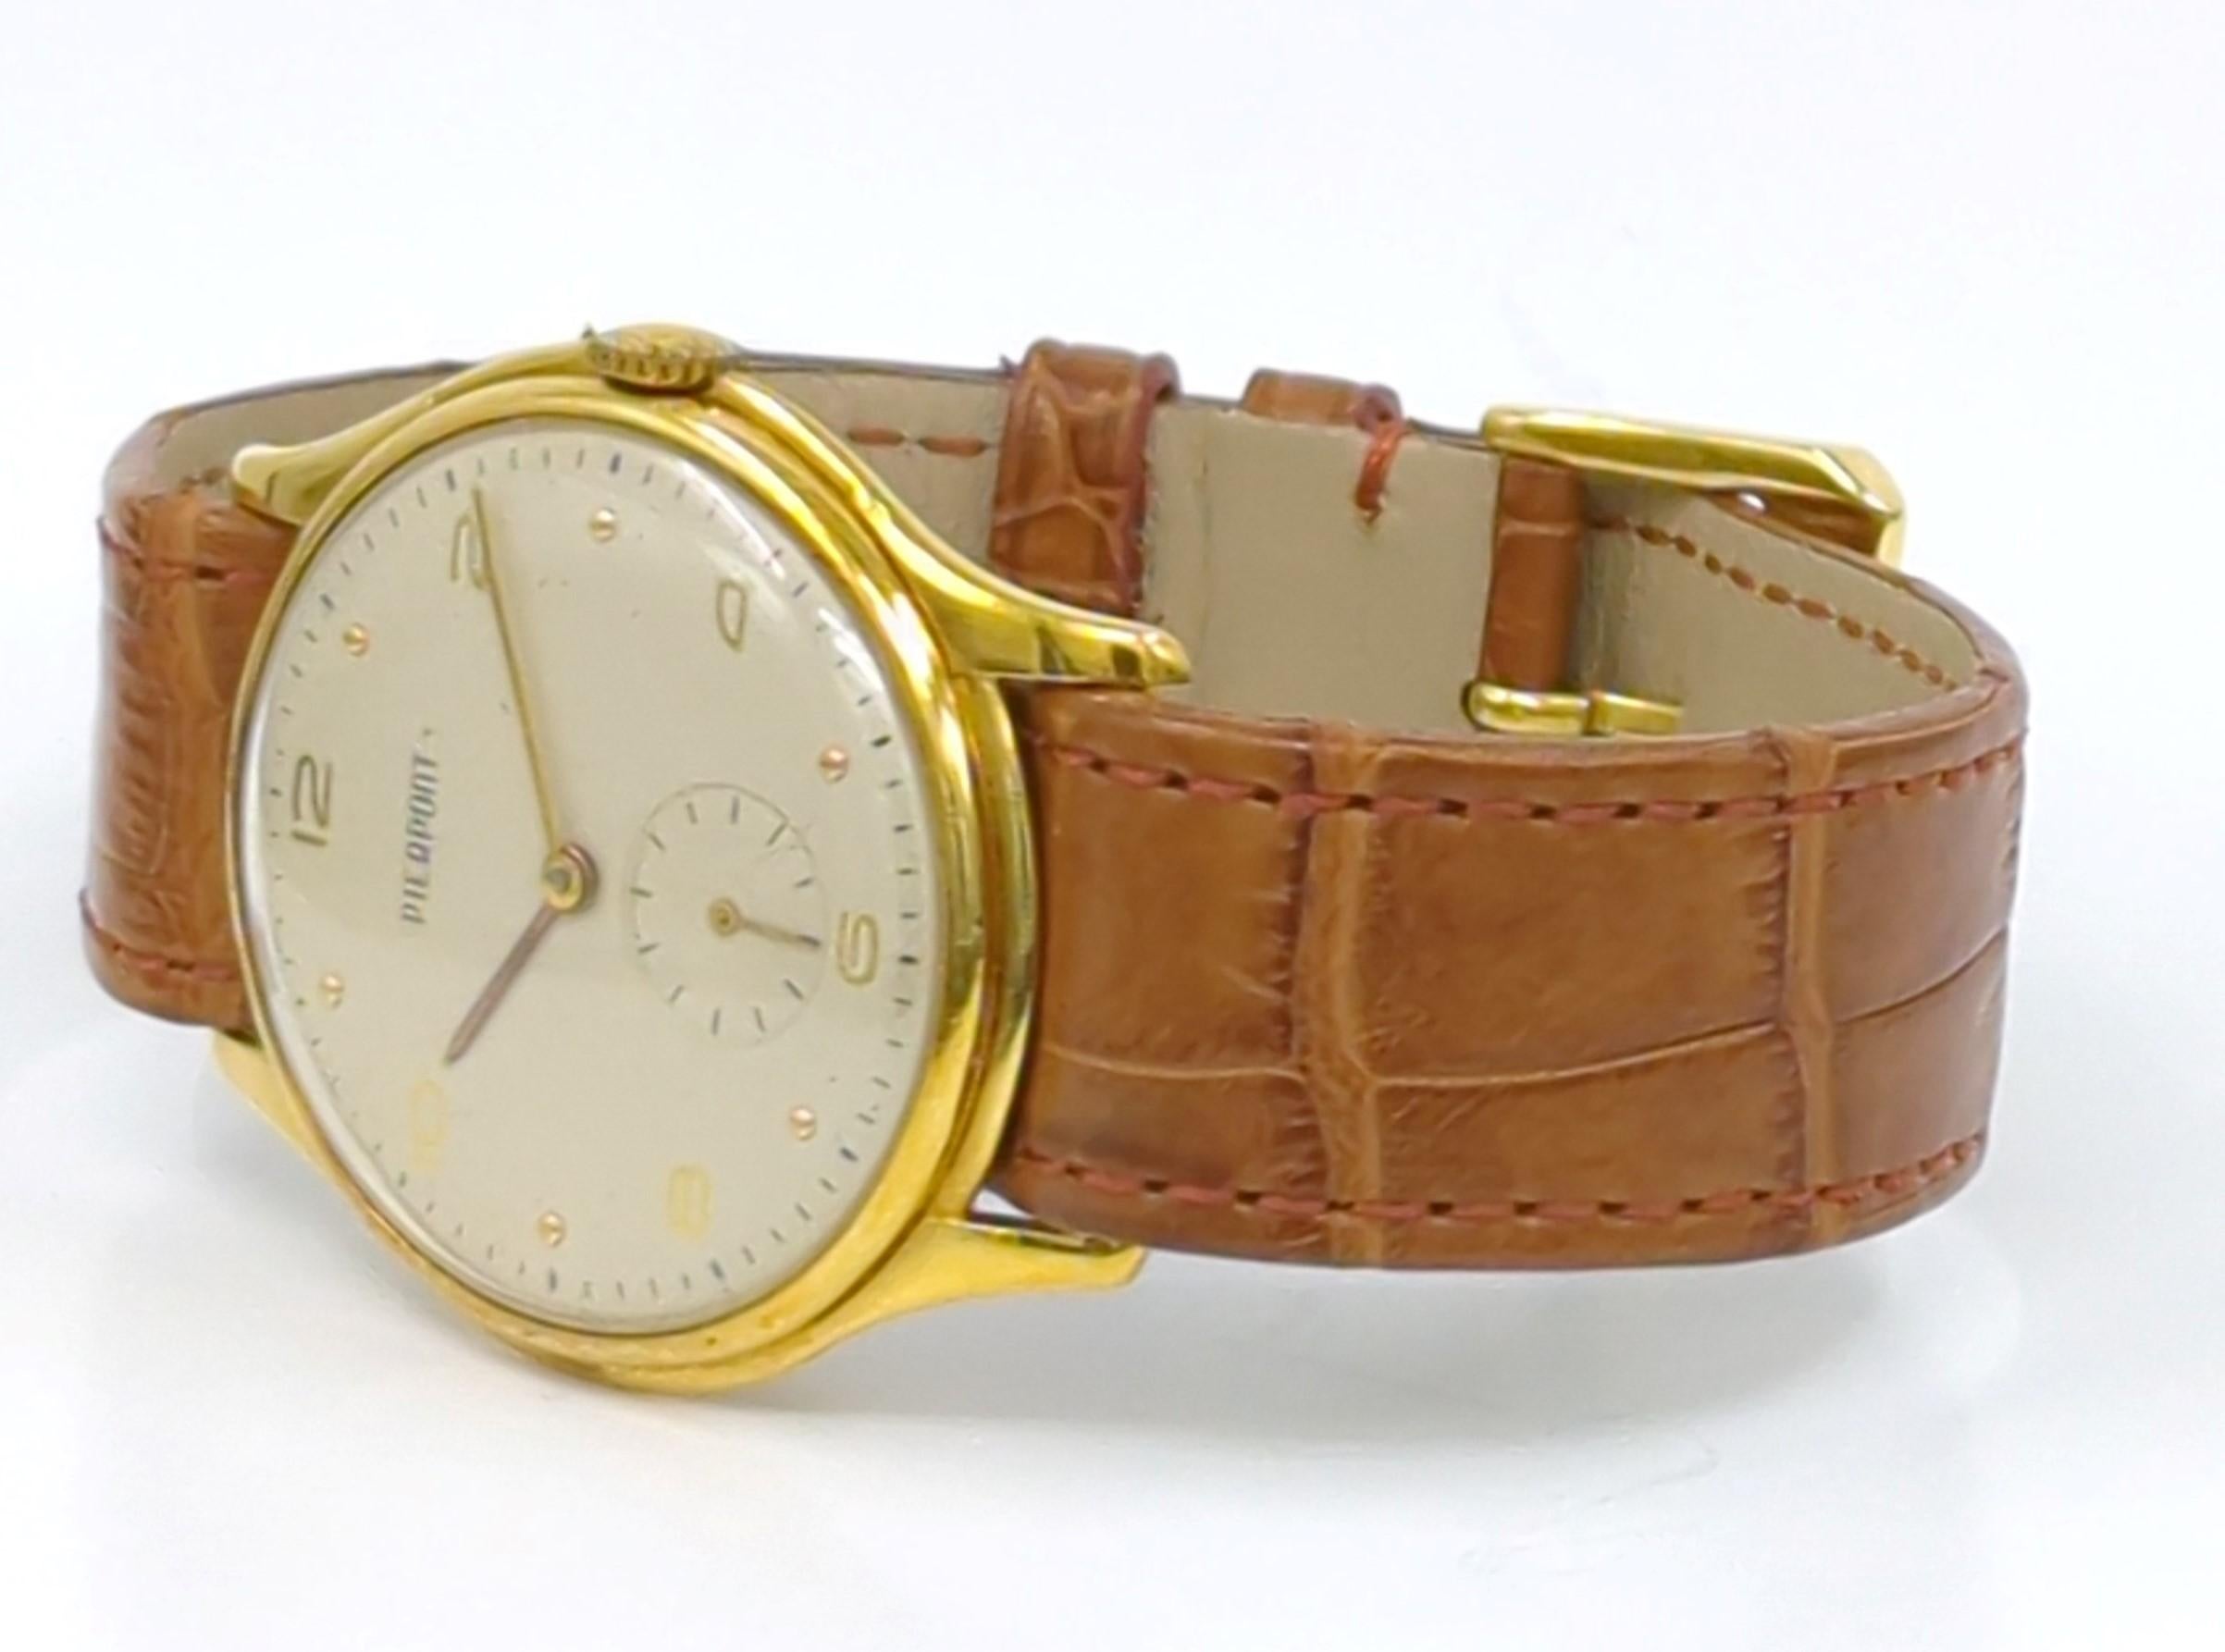 Cette montre Pierpont pour homme est un garde-temps rare et distingué des années 1940, qui incarne l'élégance et le savoir-faire d'une époque révolue. Collectional en or massif 18 carats et Swiss made, il respire le luxe et le raffinement, ce qui en